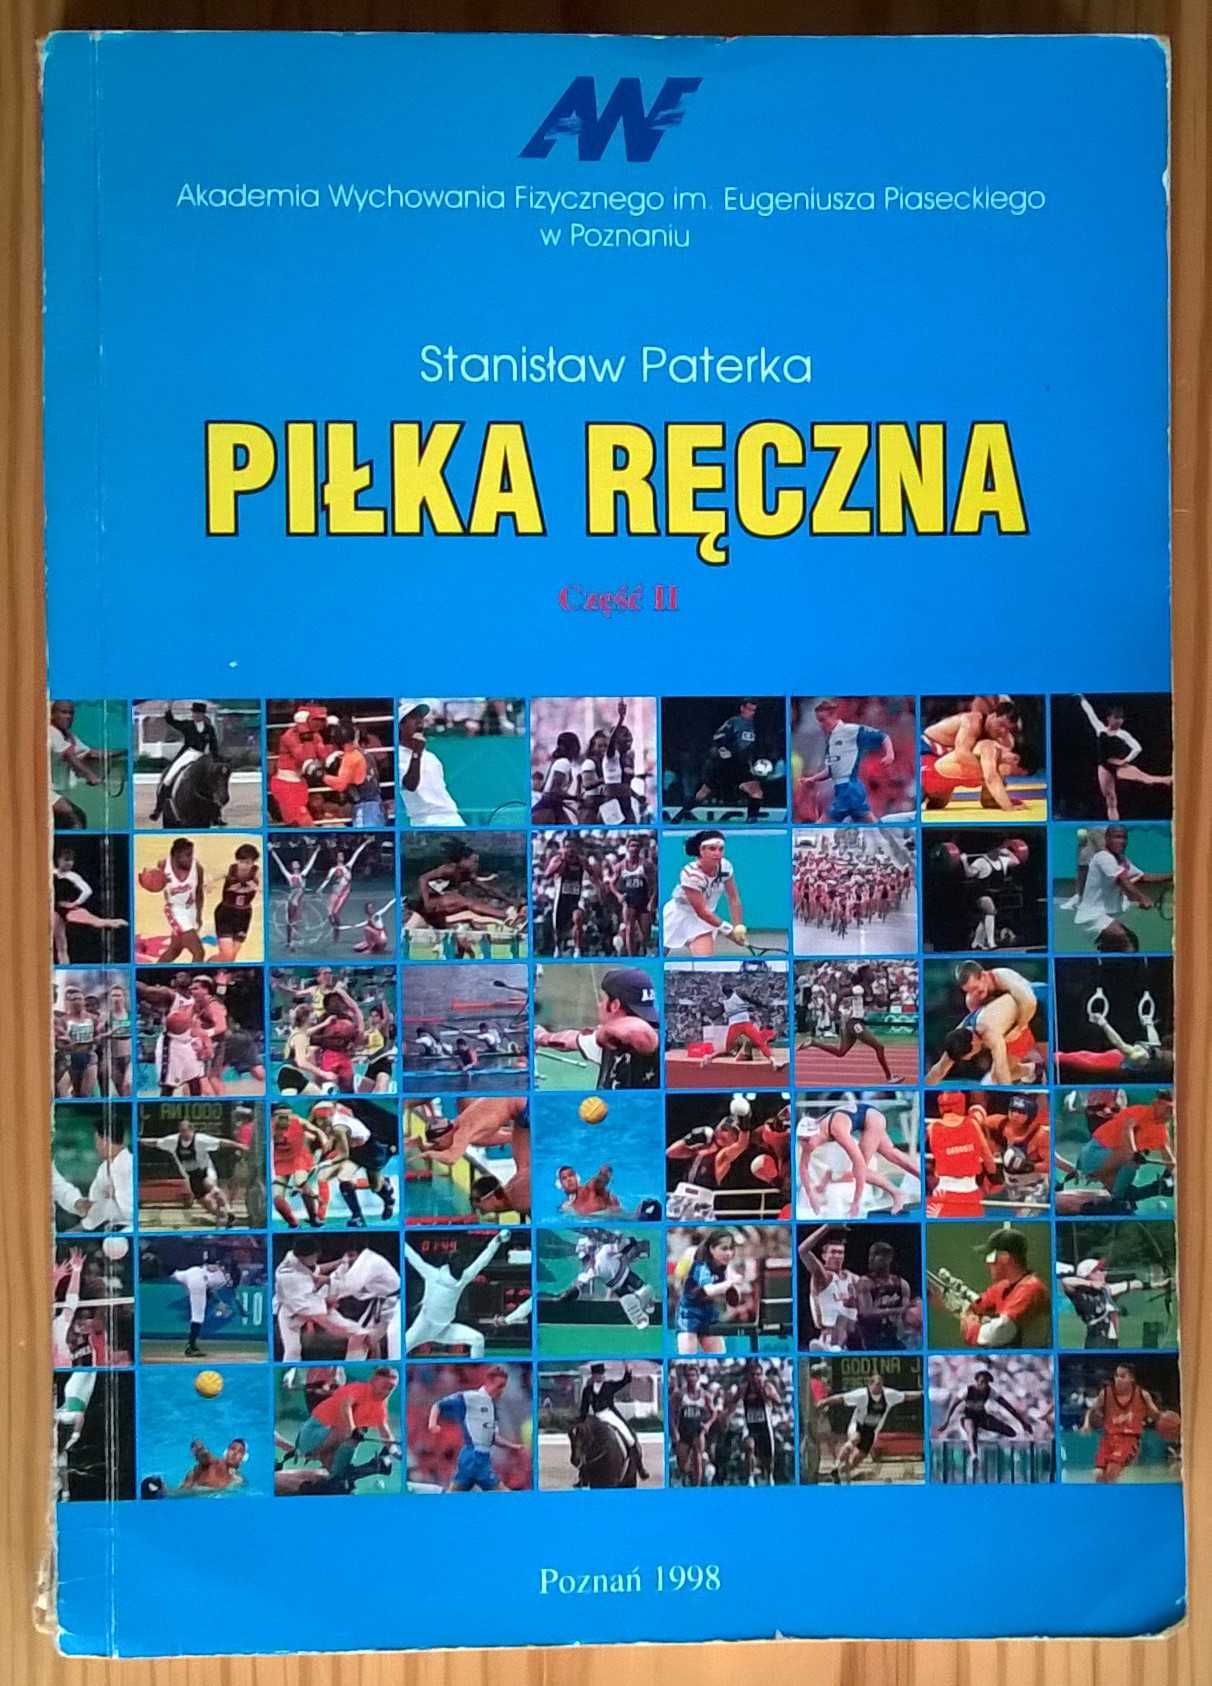 Piłka ręczna – Część II – Stanisław Paterka – skrypt – AWF